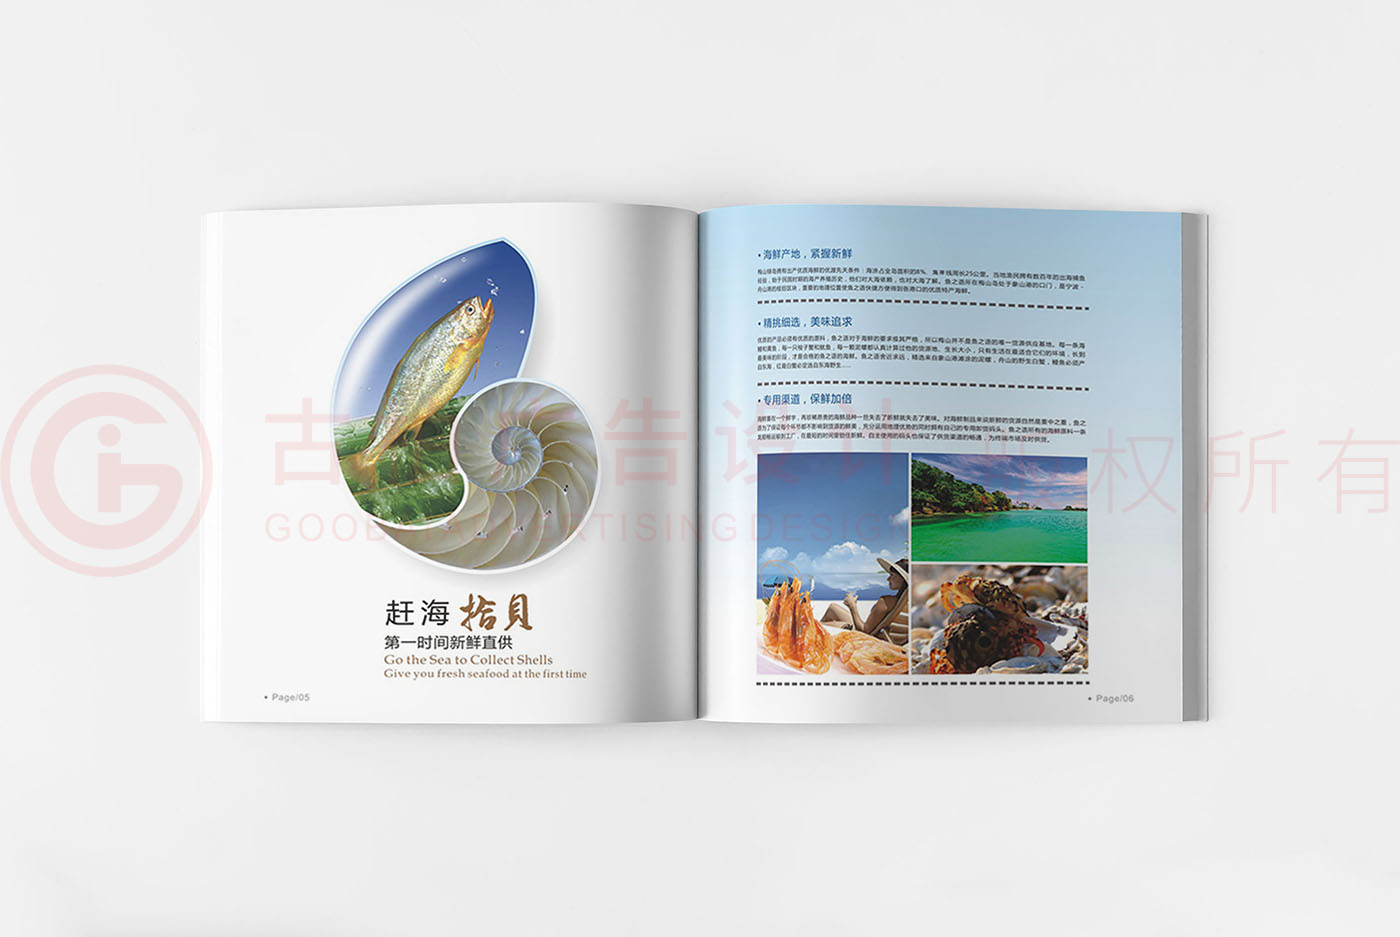 水产海鲜画册设计,水产画册设计公司,食品画册设计公司